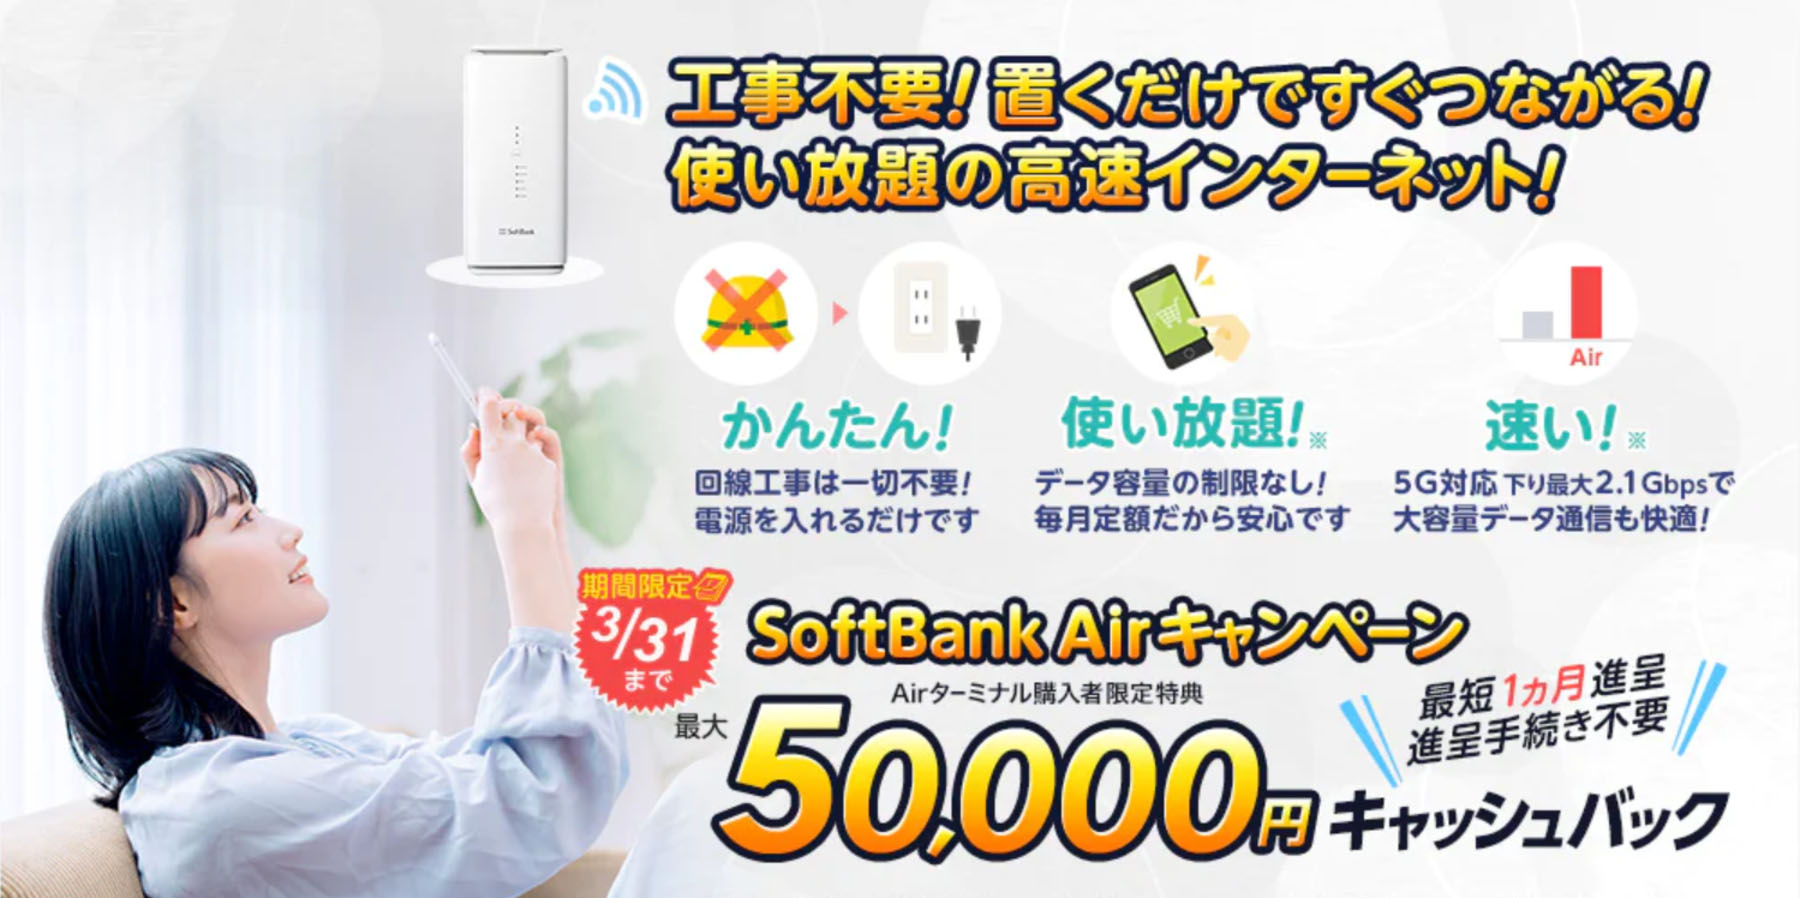 エヌズカンパニー SoftBank Air